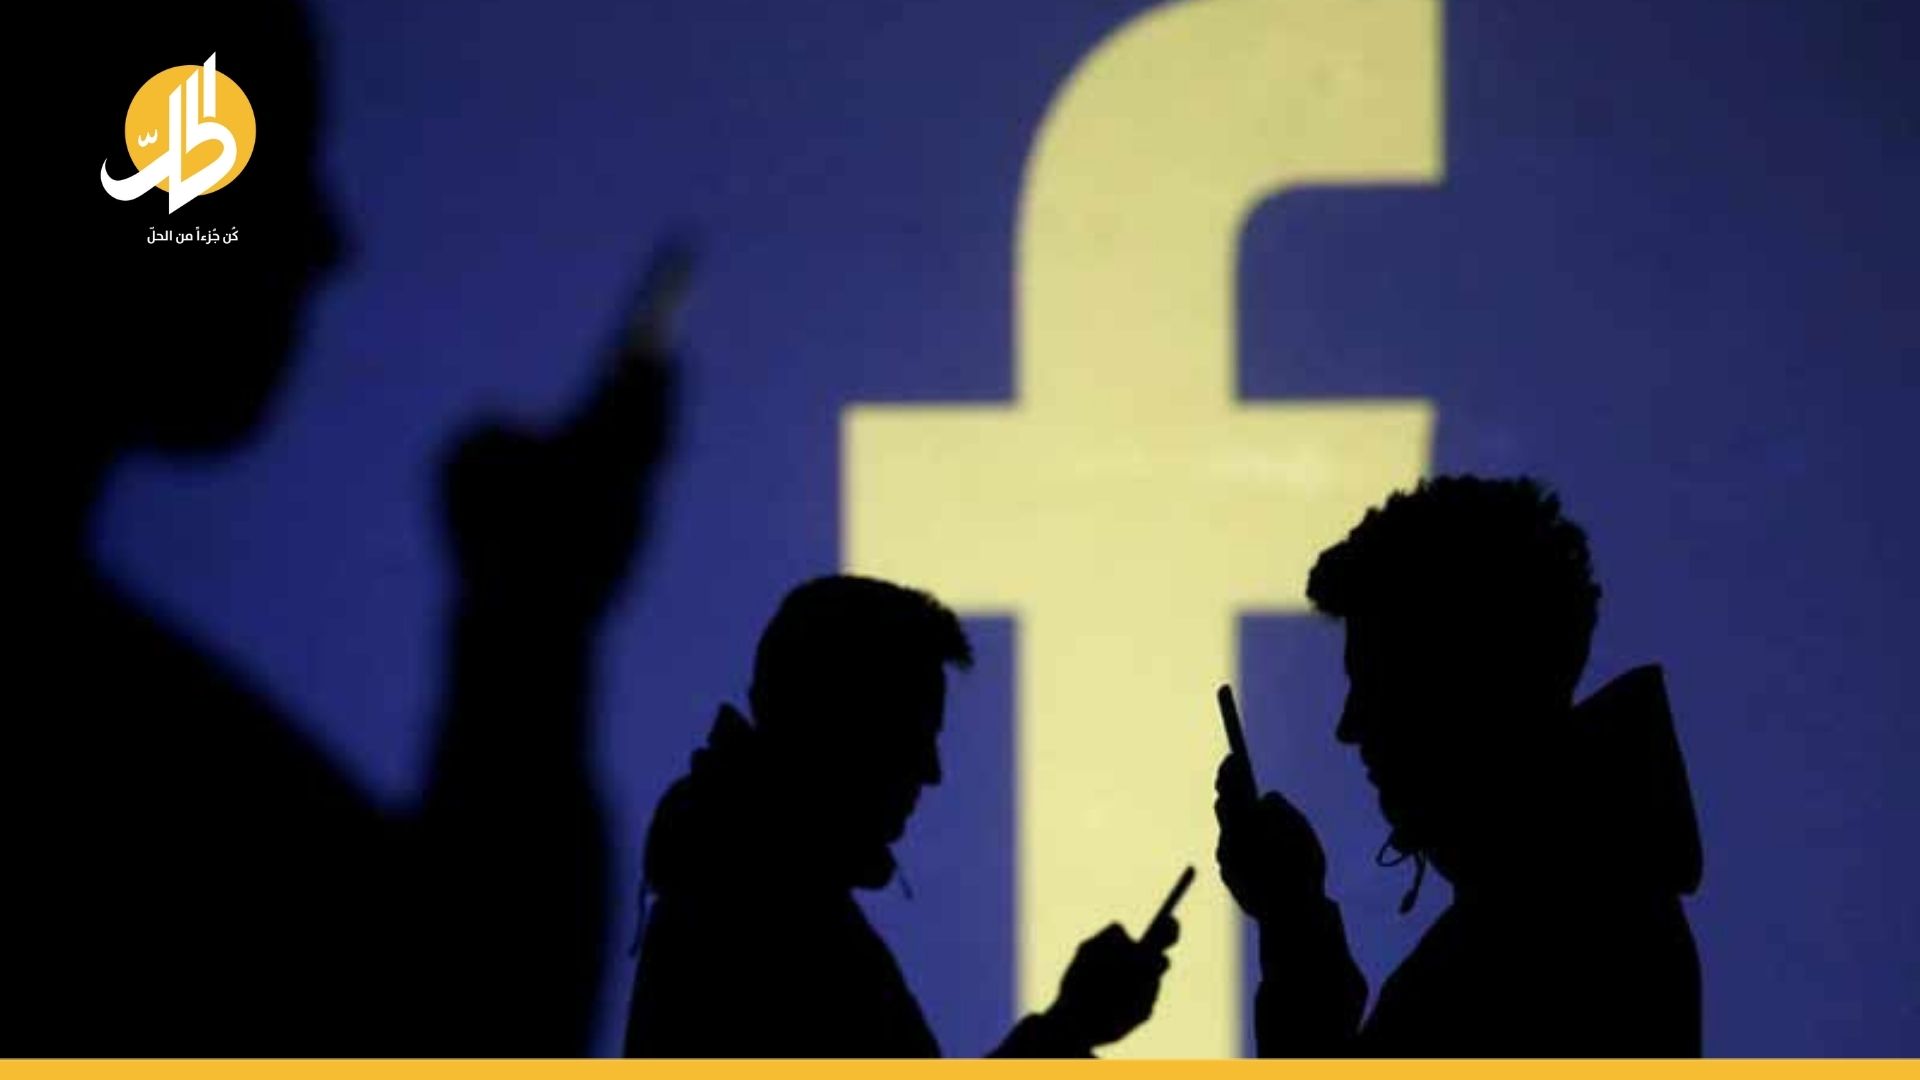 معايير جديدة من “فيسبوك” لتحجيم الأخبار المزيفة في العراق